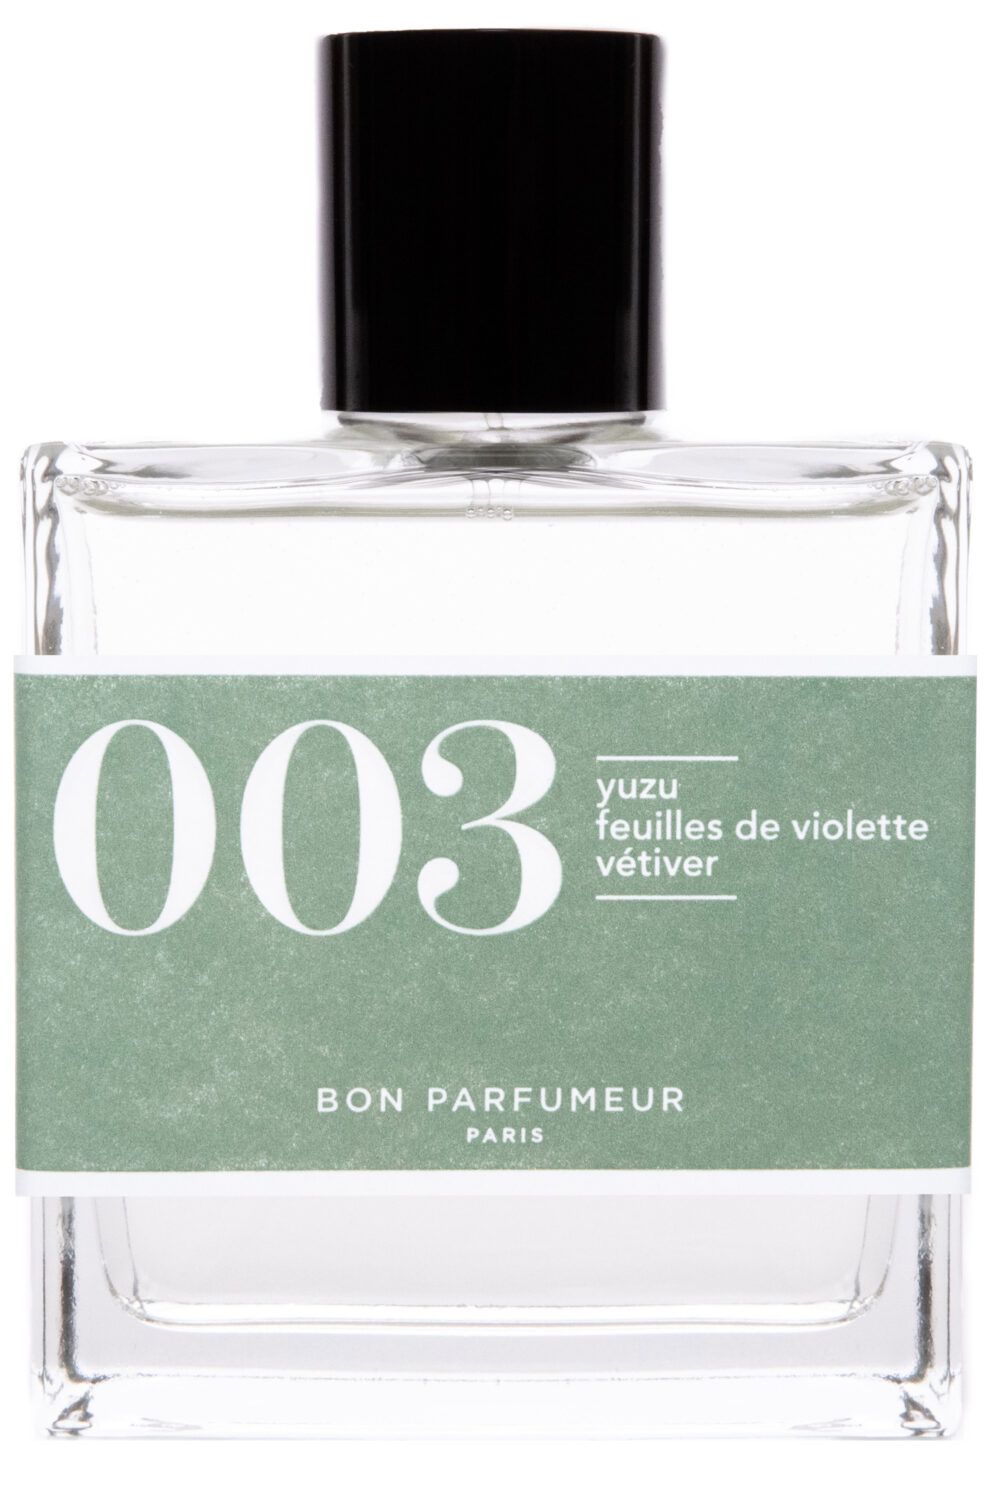 Bon Parfumeur Paris - 003 Yuzu feuille de violette vétiver Eau de Cologne 100mL